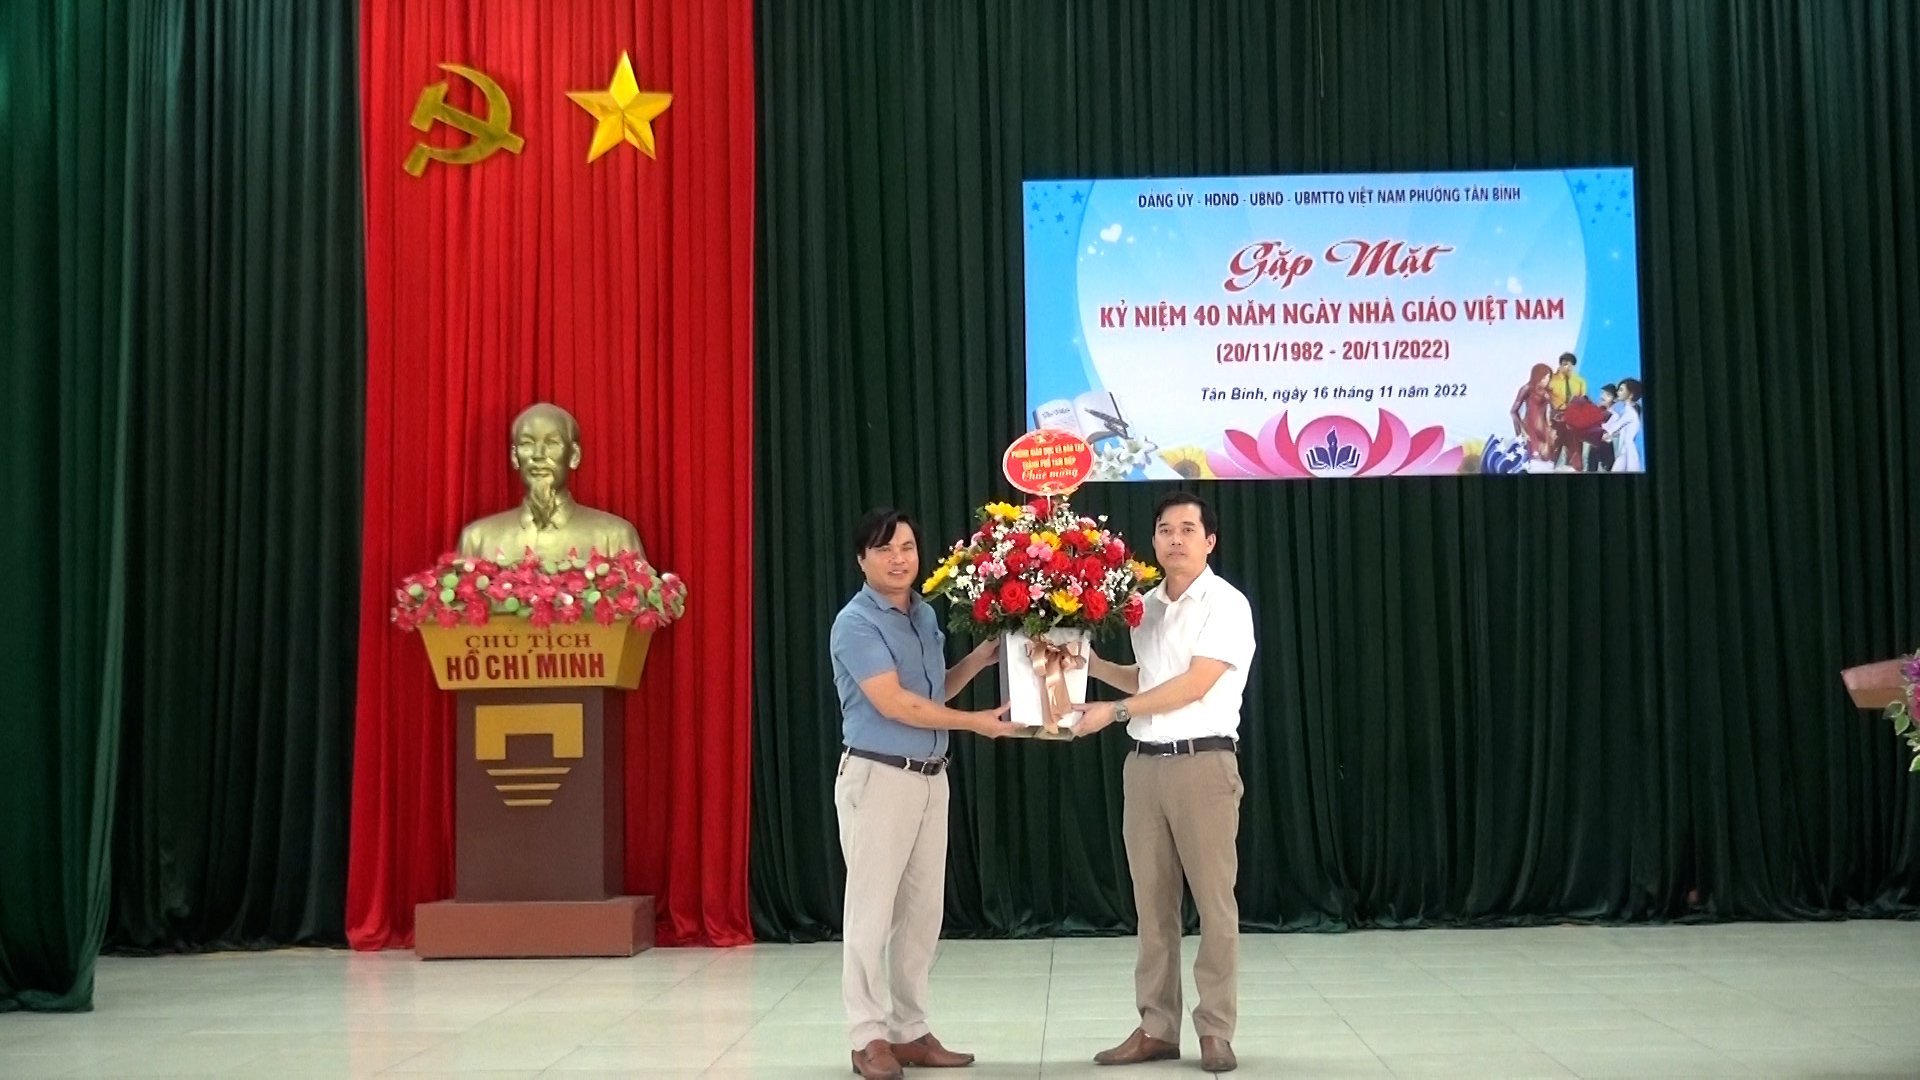 Tân Bình gặp mặt nhân kỉ niệm 40 năm ngày Nhà giáo Việt Nam 20/11/1982 - 20/11/2022